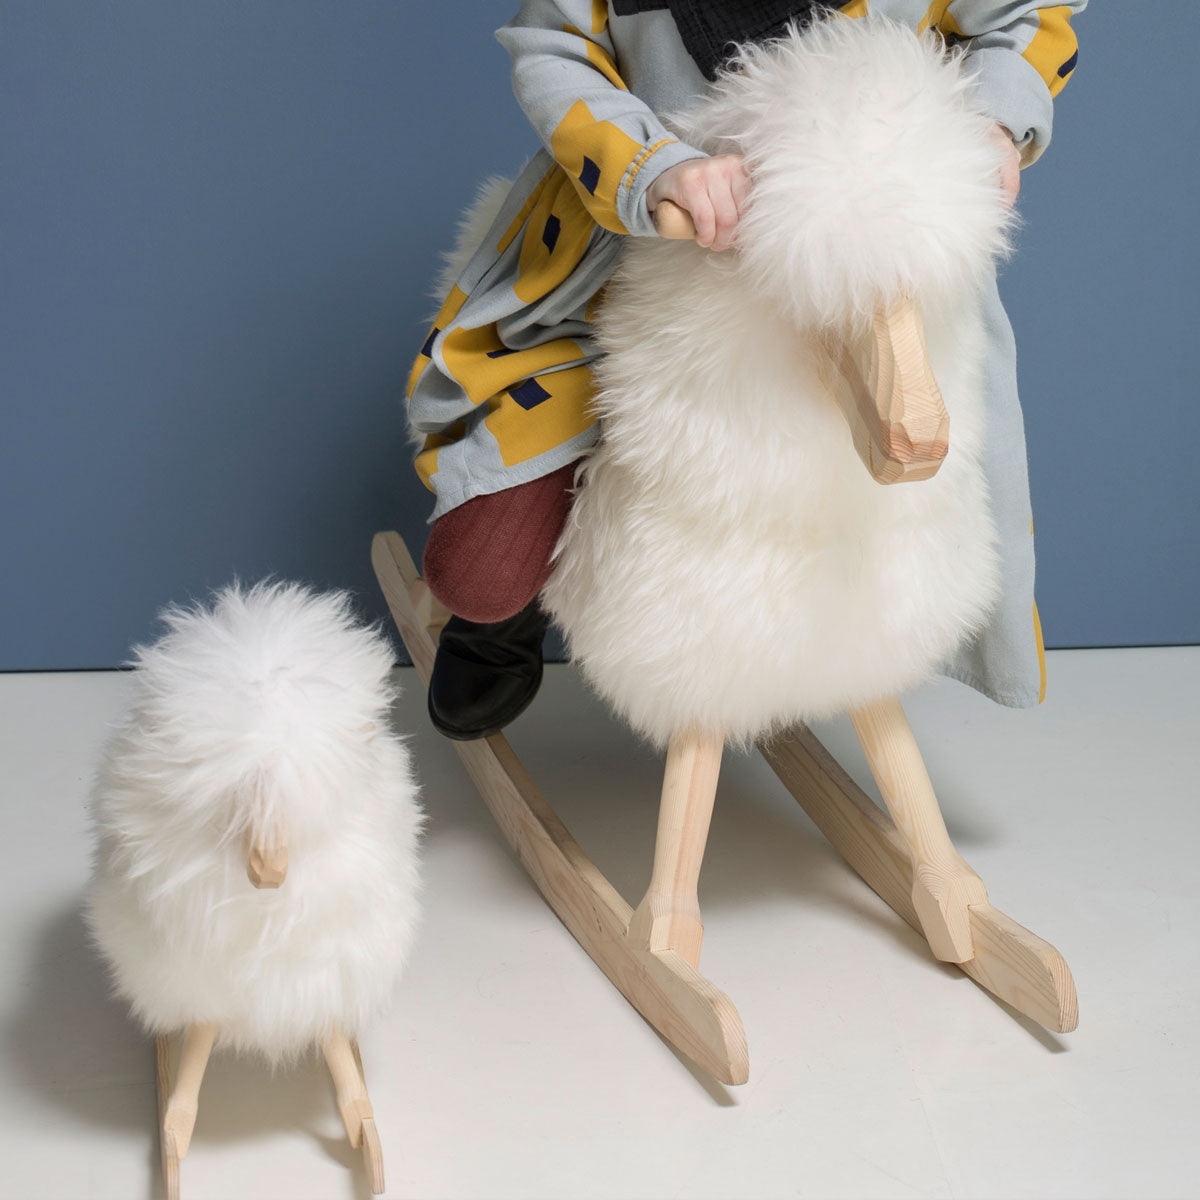 The Rocking Sheep │ Povl Kjer Design │ Made in Denmark │ Natural White Short Wool │ Large